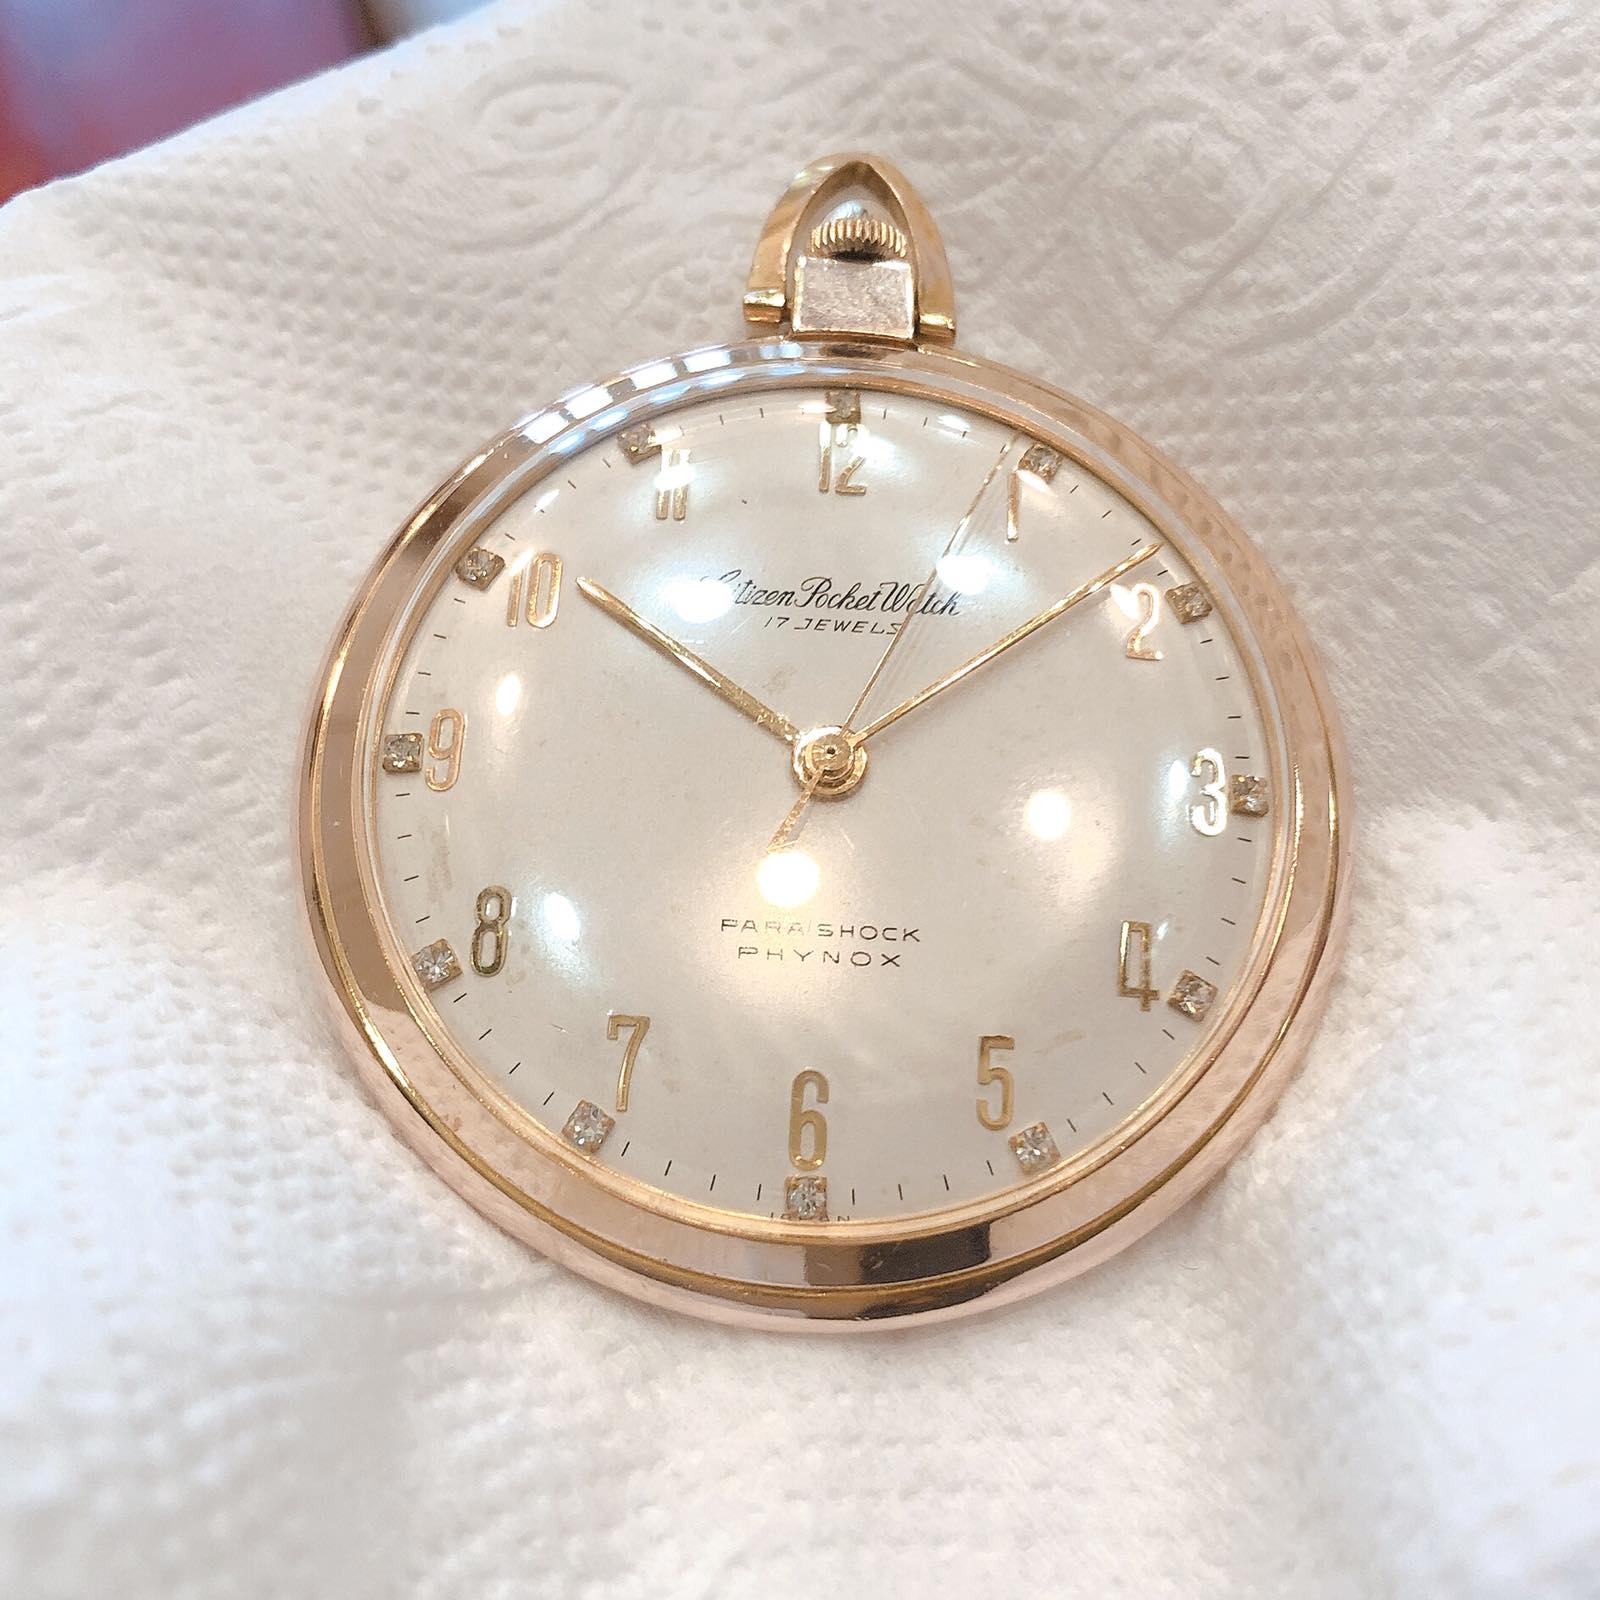 Đồng hồ cổ Citizen ROCKET lên dây lacke vàng hồng 20micro C.G.P chính hãng nhật bản